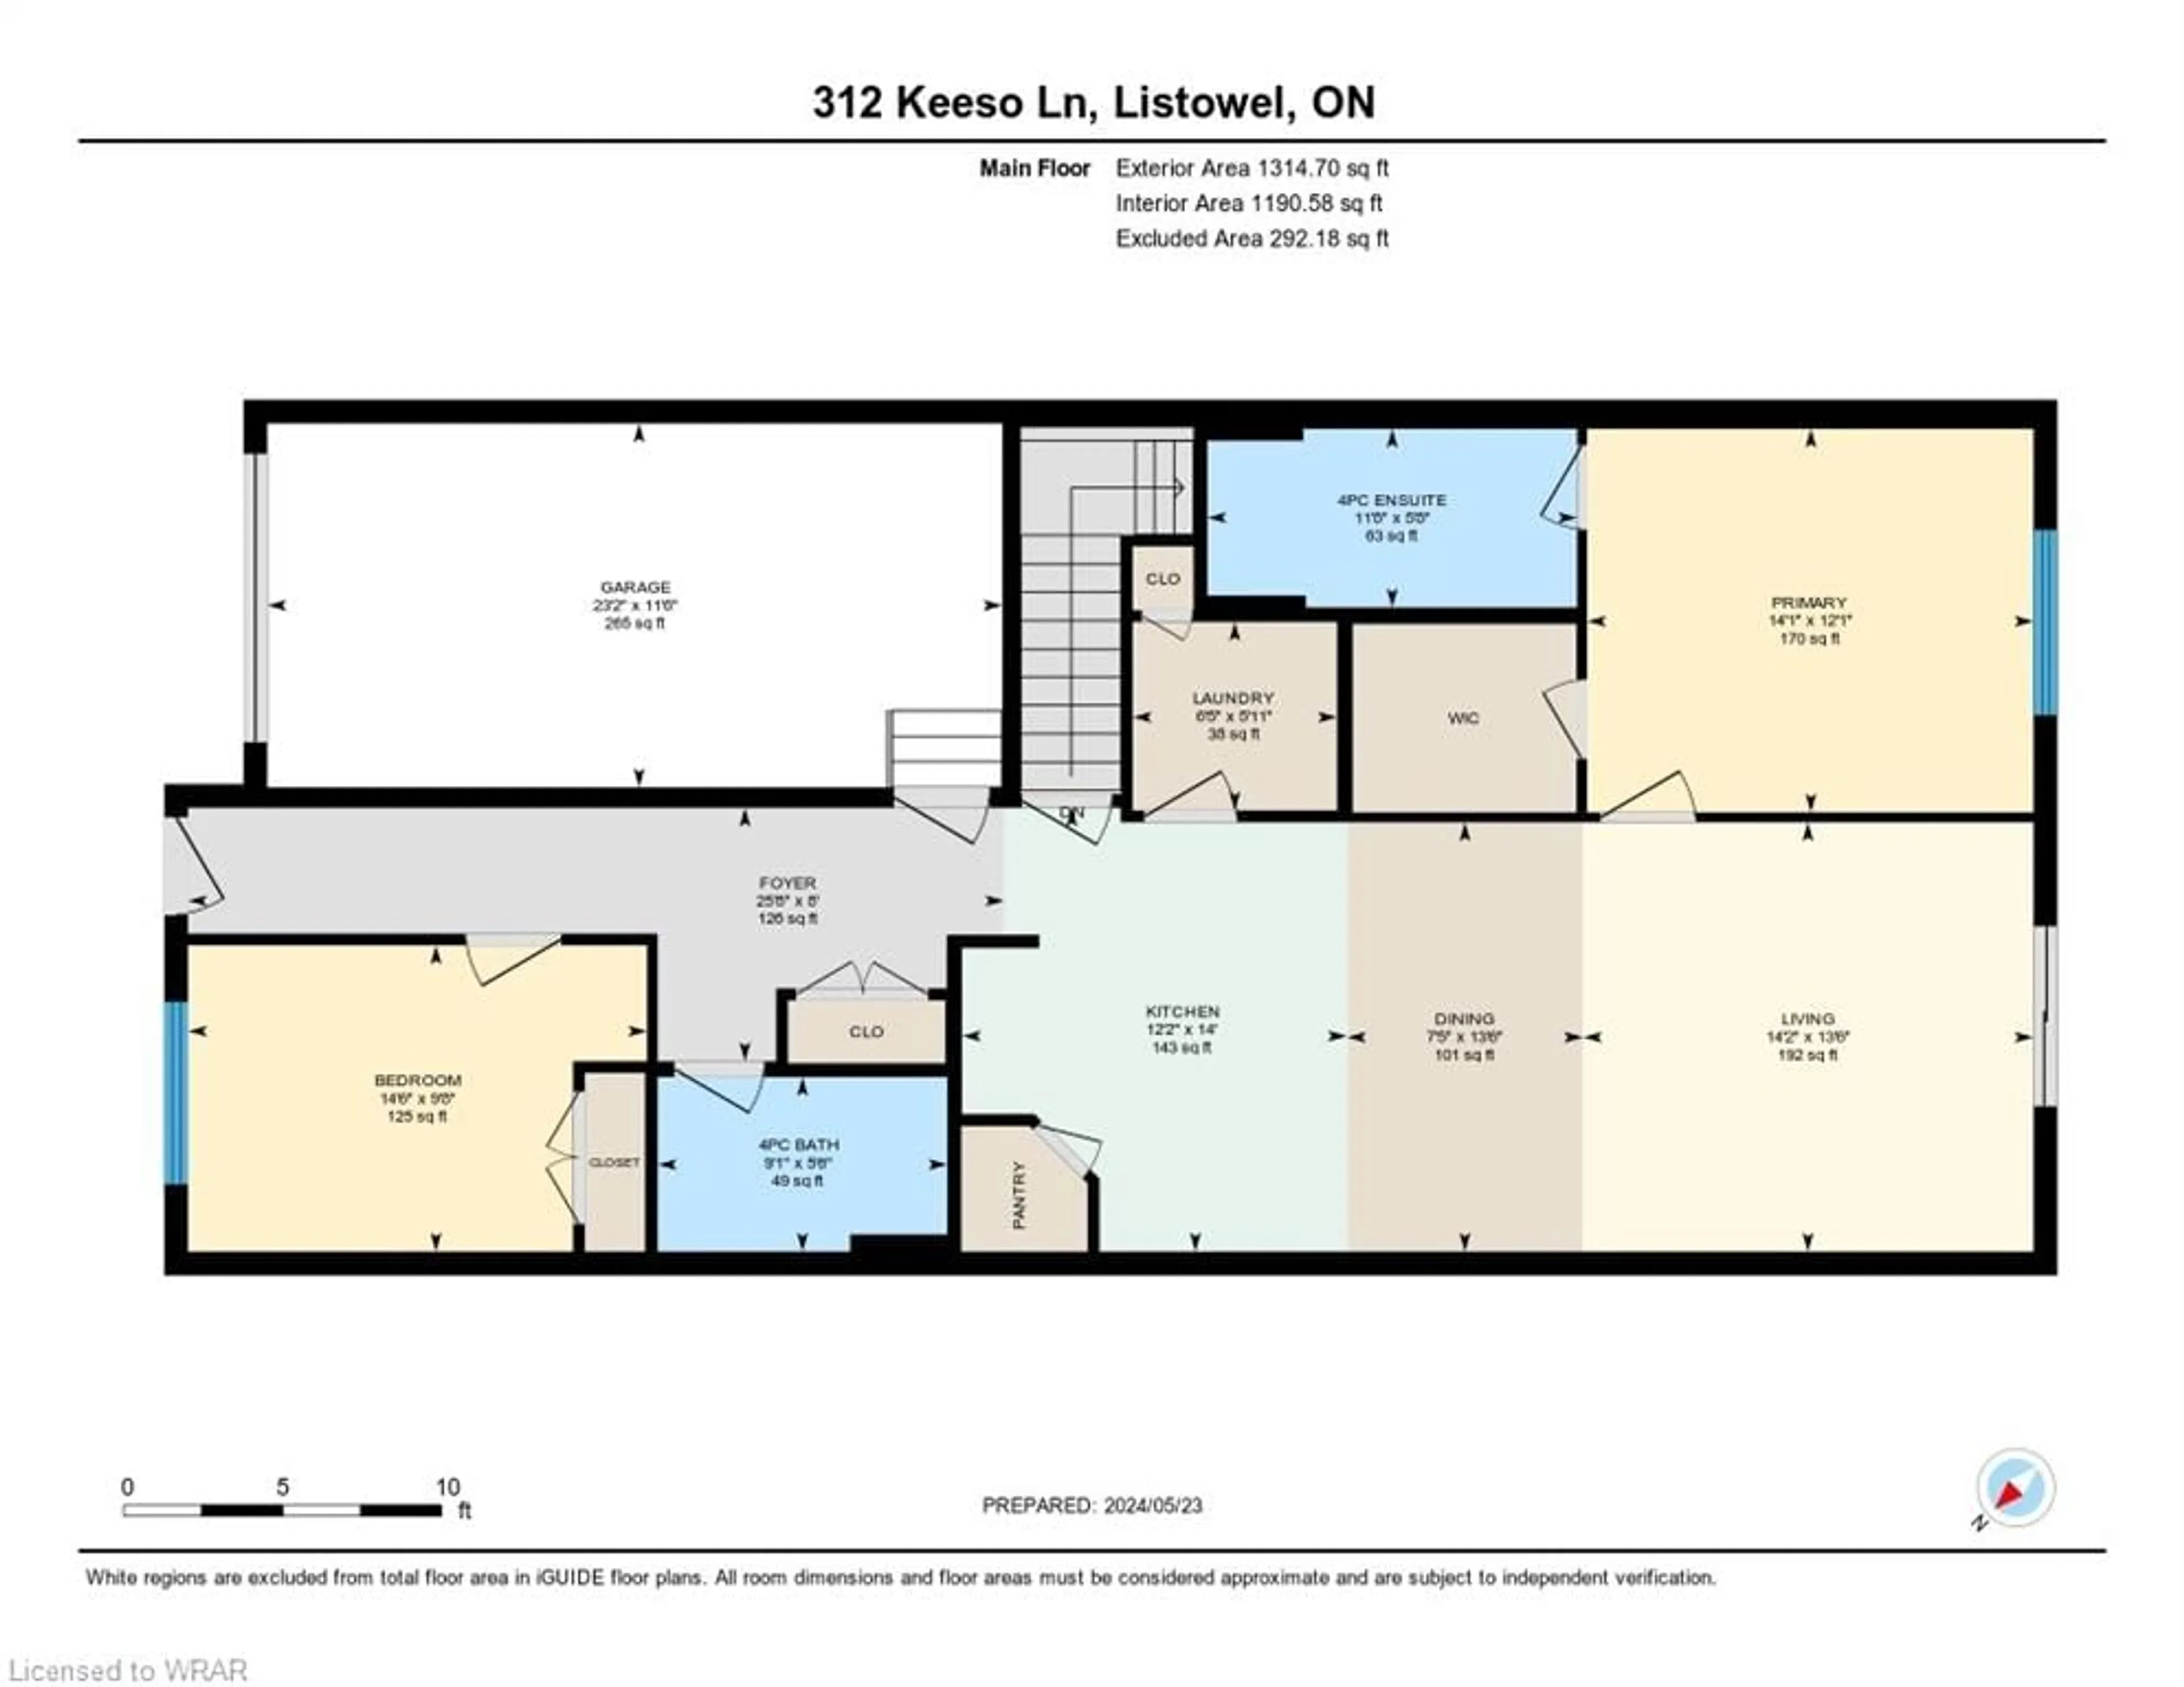 Floor plan for 312 Keeso Lane, Listowel Ontario N4W 3V2